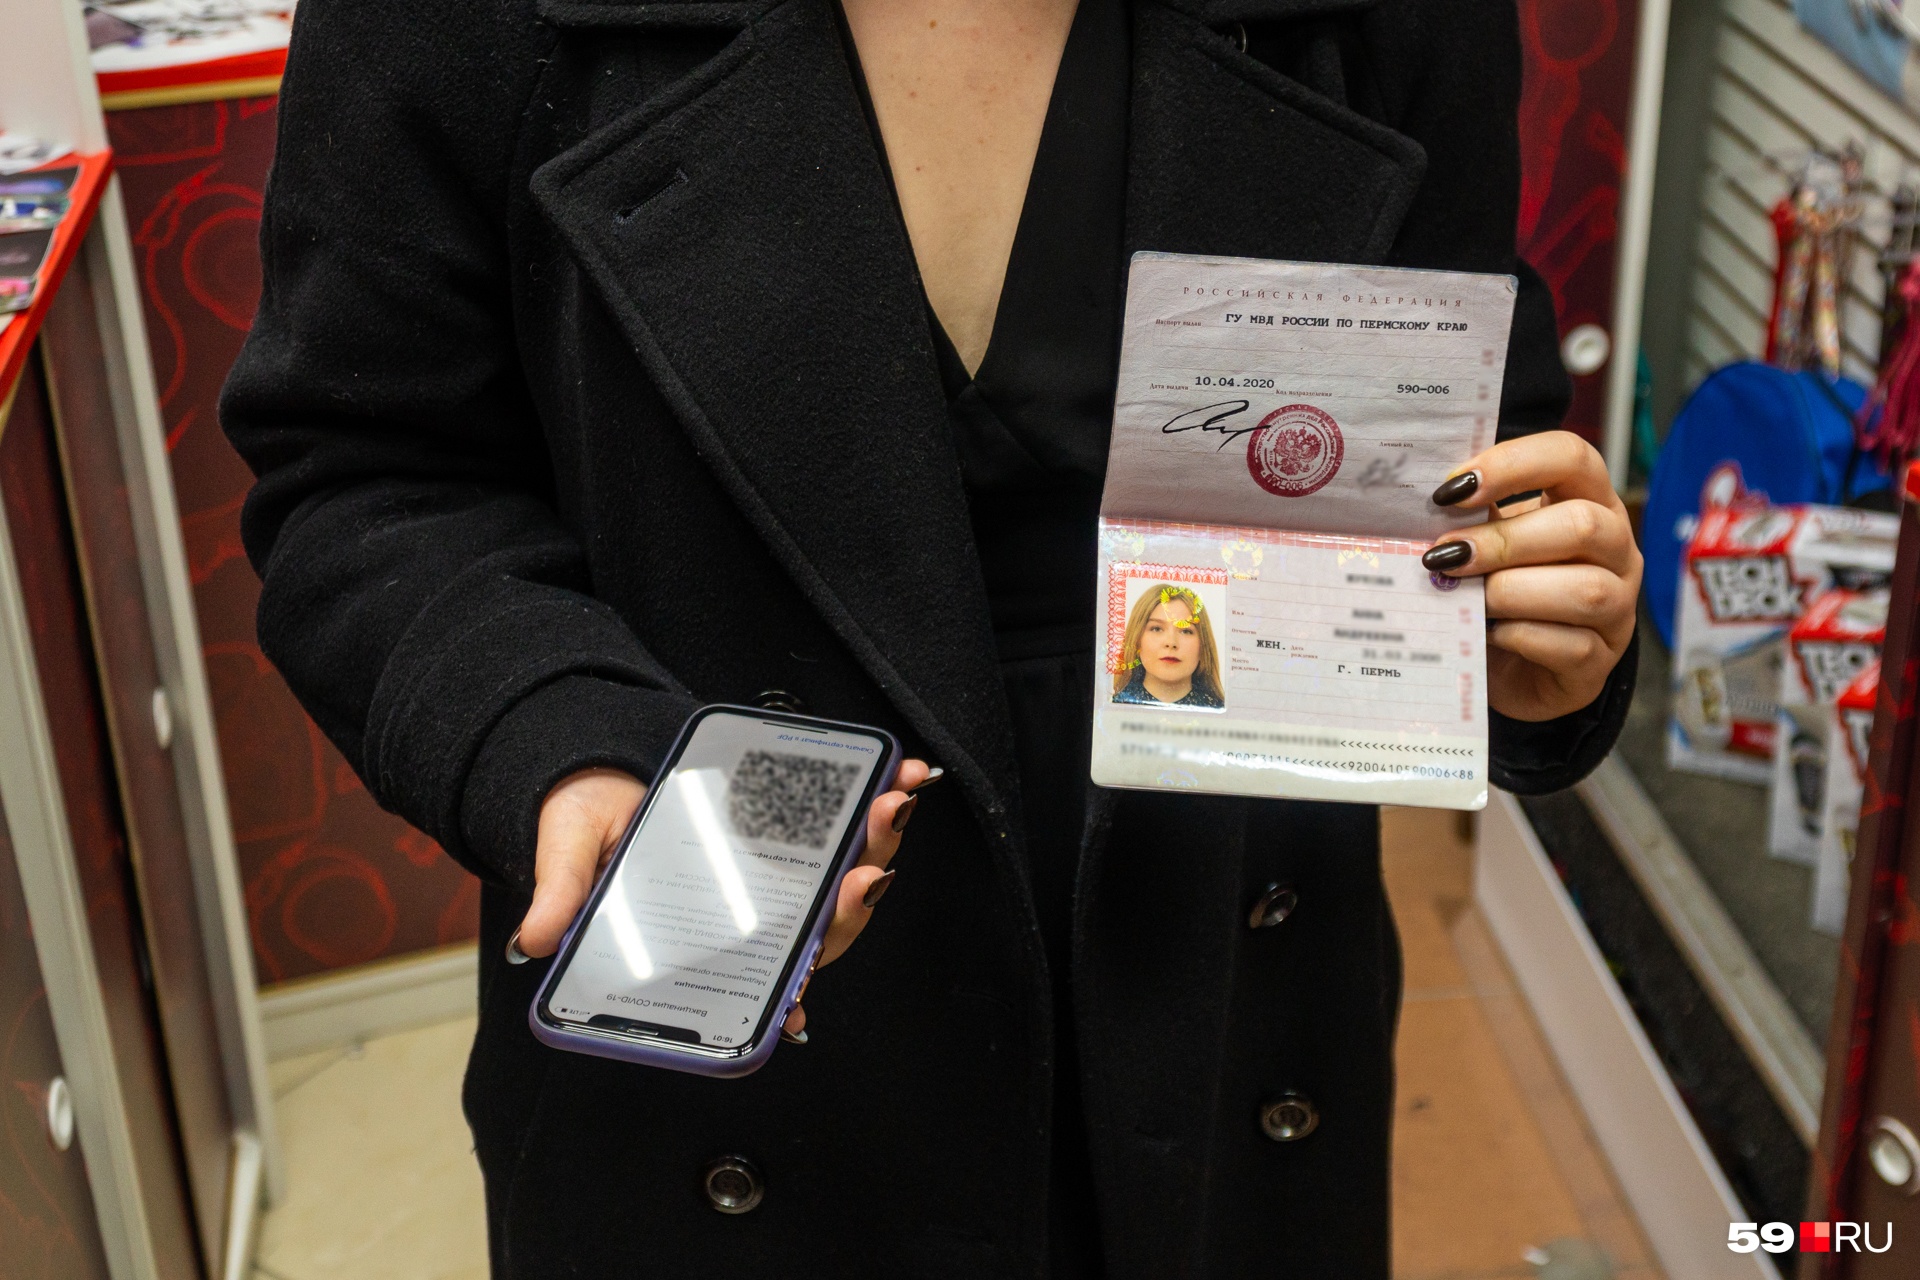 QR-код, паспорт и маска — необходимый набор для доступа в торговый центр